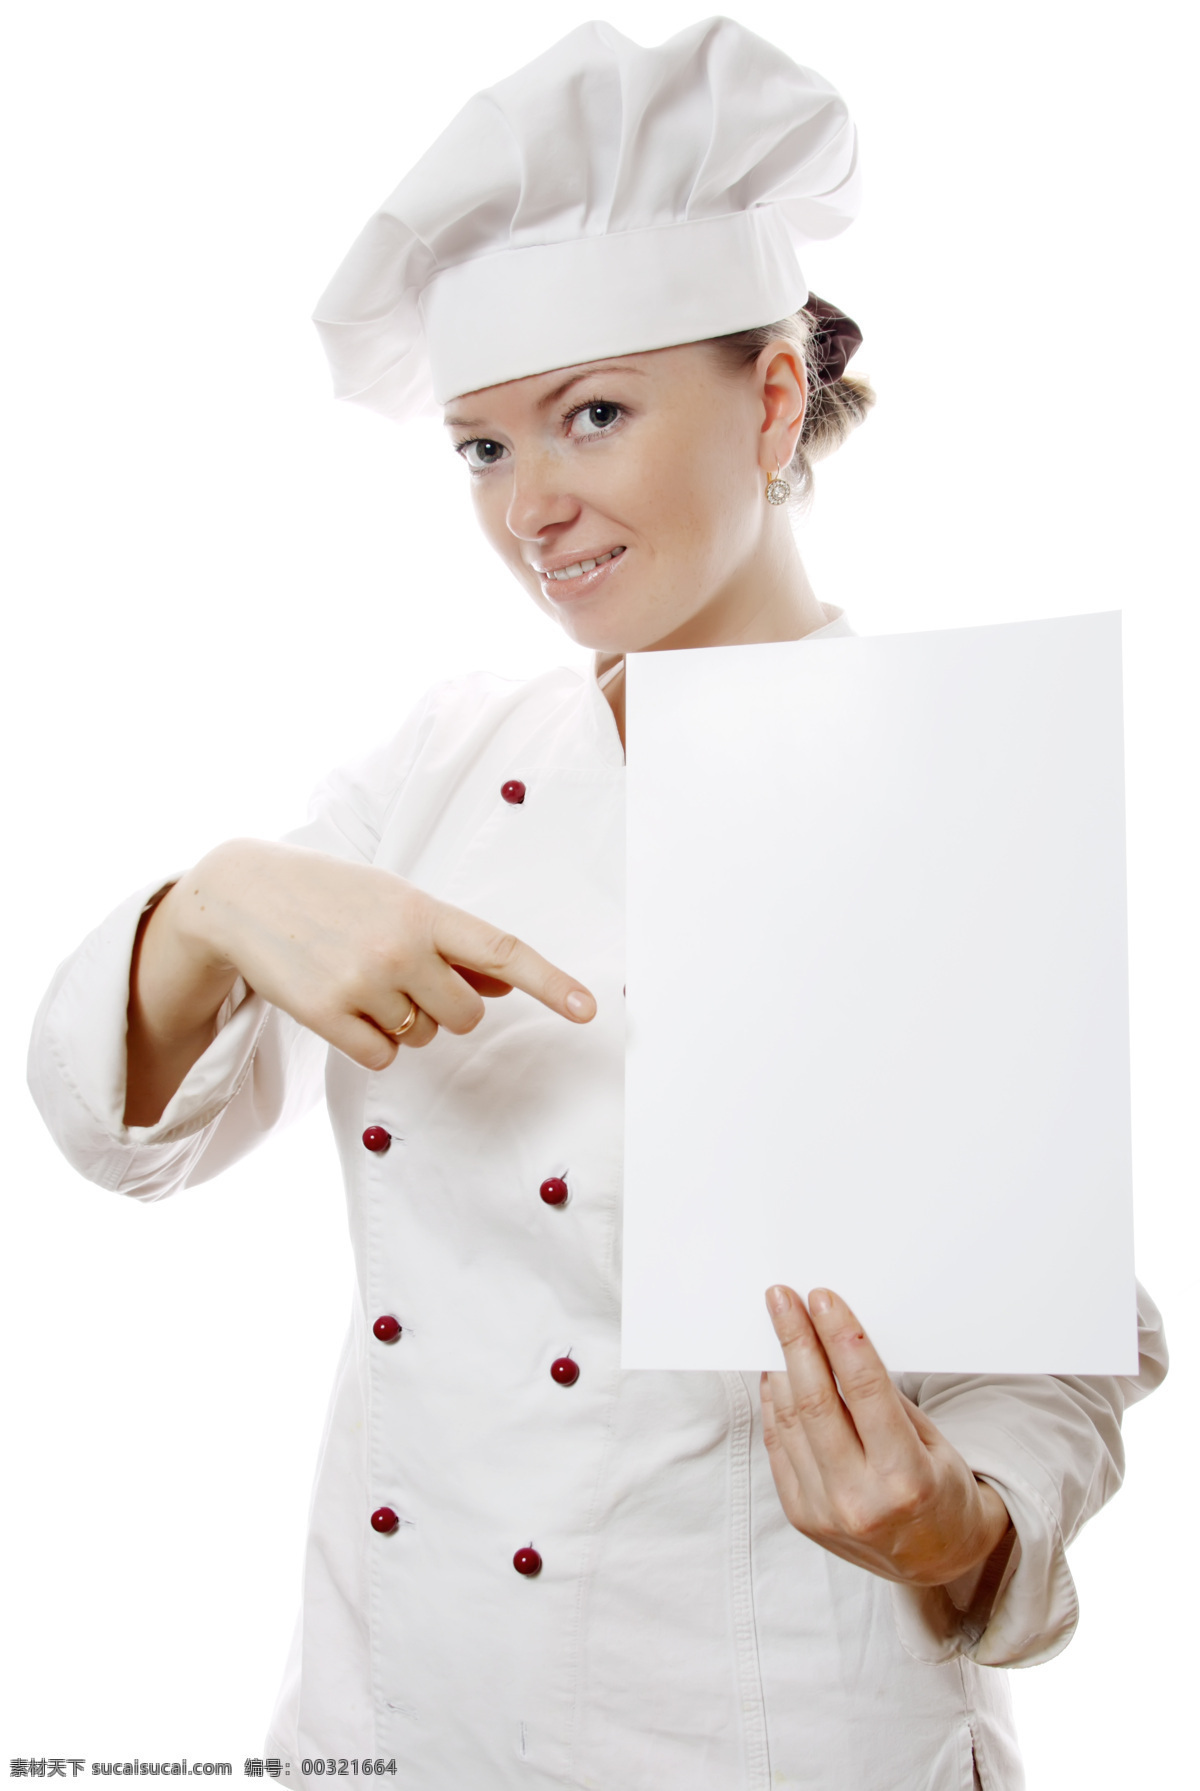 女 厨师 空白 广告牌 女厨师 国外厨师 外国厨师 女性女人 大厨 烹饪 料理 烹调 空白纸 空白广告牌 商务人士 人物图片